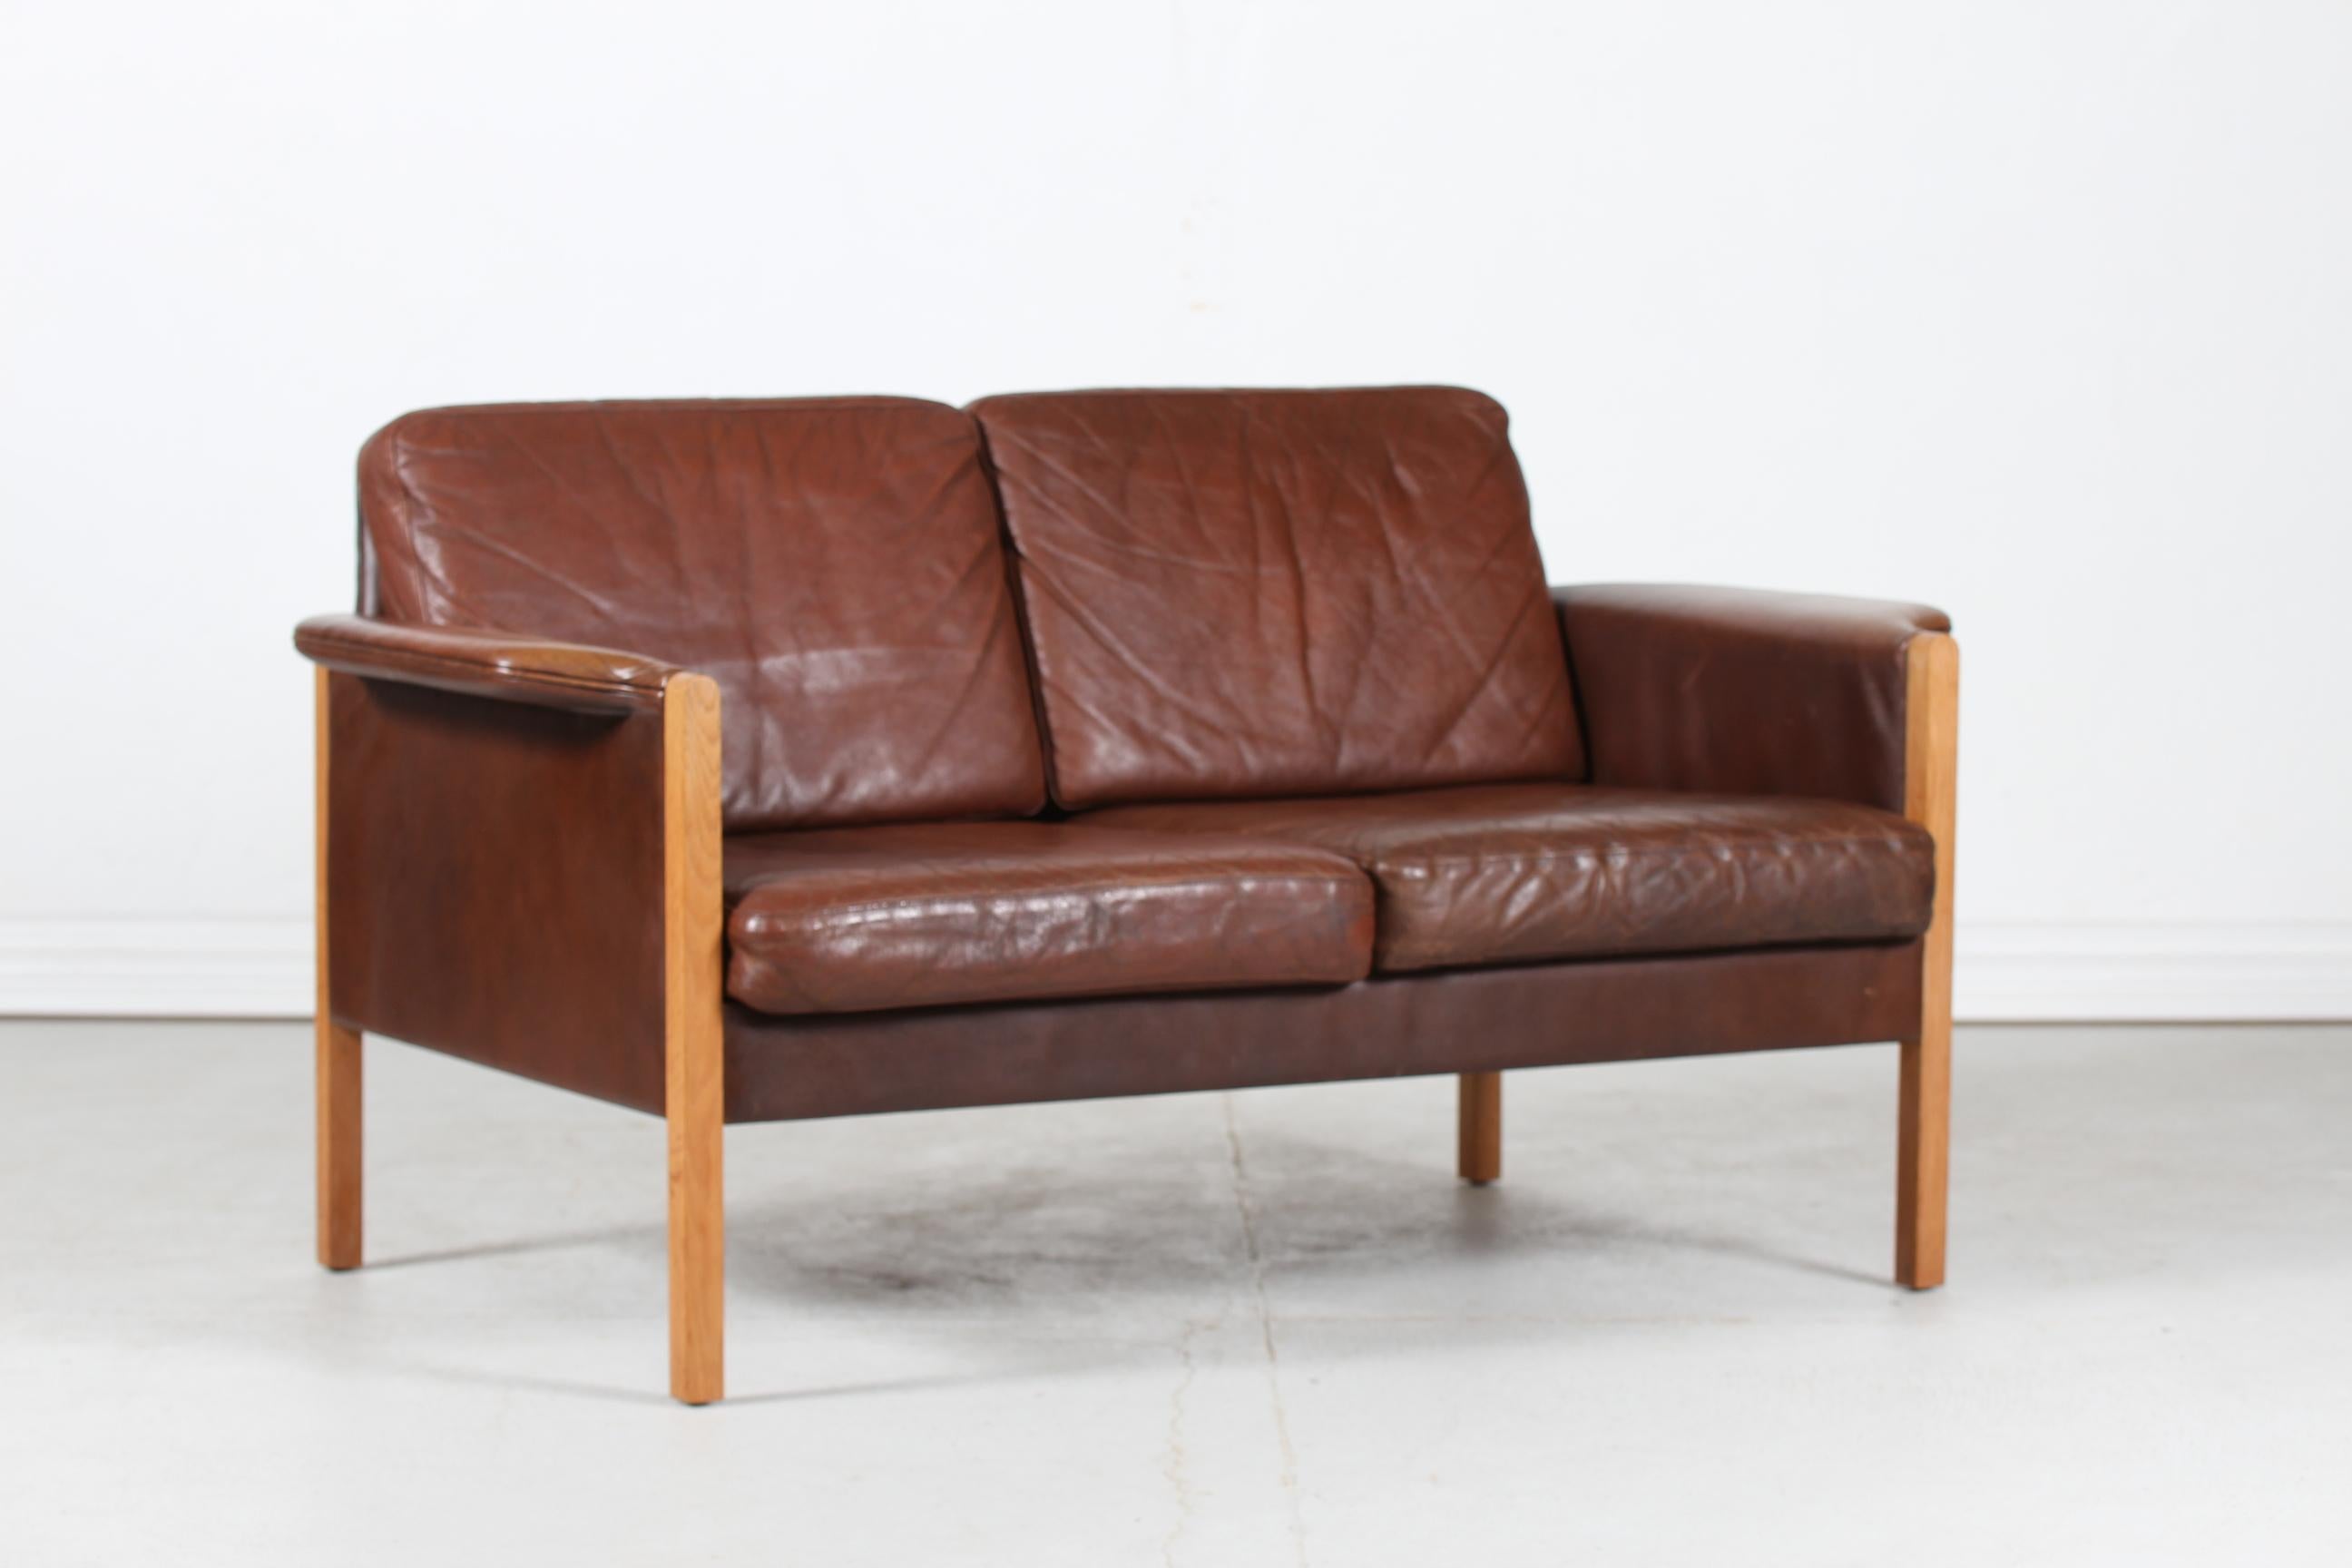 Dänisches Vintage-Sofa für 2 Personen im Stil von Finn Juhl, hergestellt in Dänemark in den 1970er Jahren.
Er ist mit dem originalen dunklen cognacfarbenen Leder (fast braun) gepolstert, das durch Gebrauch und Alter eine leichte Patina aufweist.